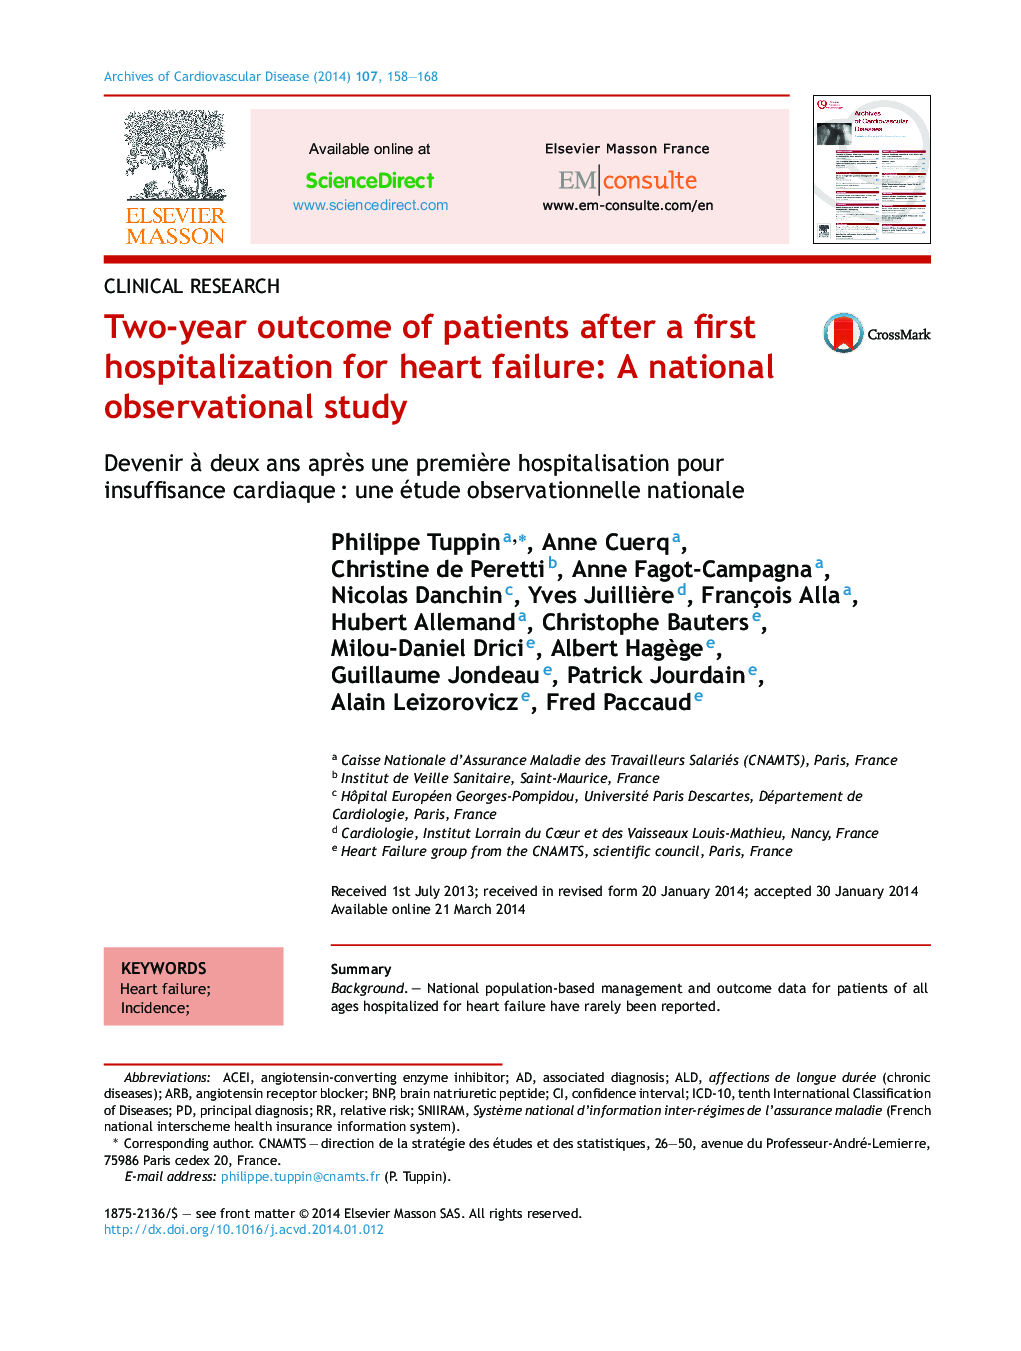 نتیجه دو ساله بیماران پس از اولین بستری شدن برای نارسایی قلبی: یک مطالعه مشاهدات ملی 